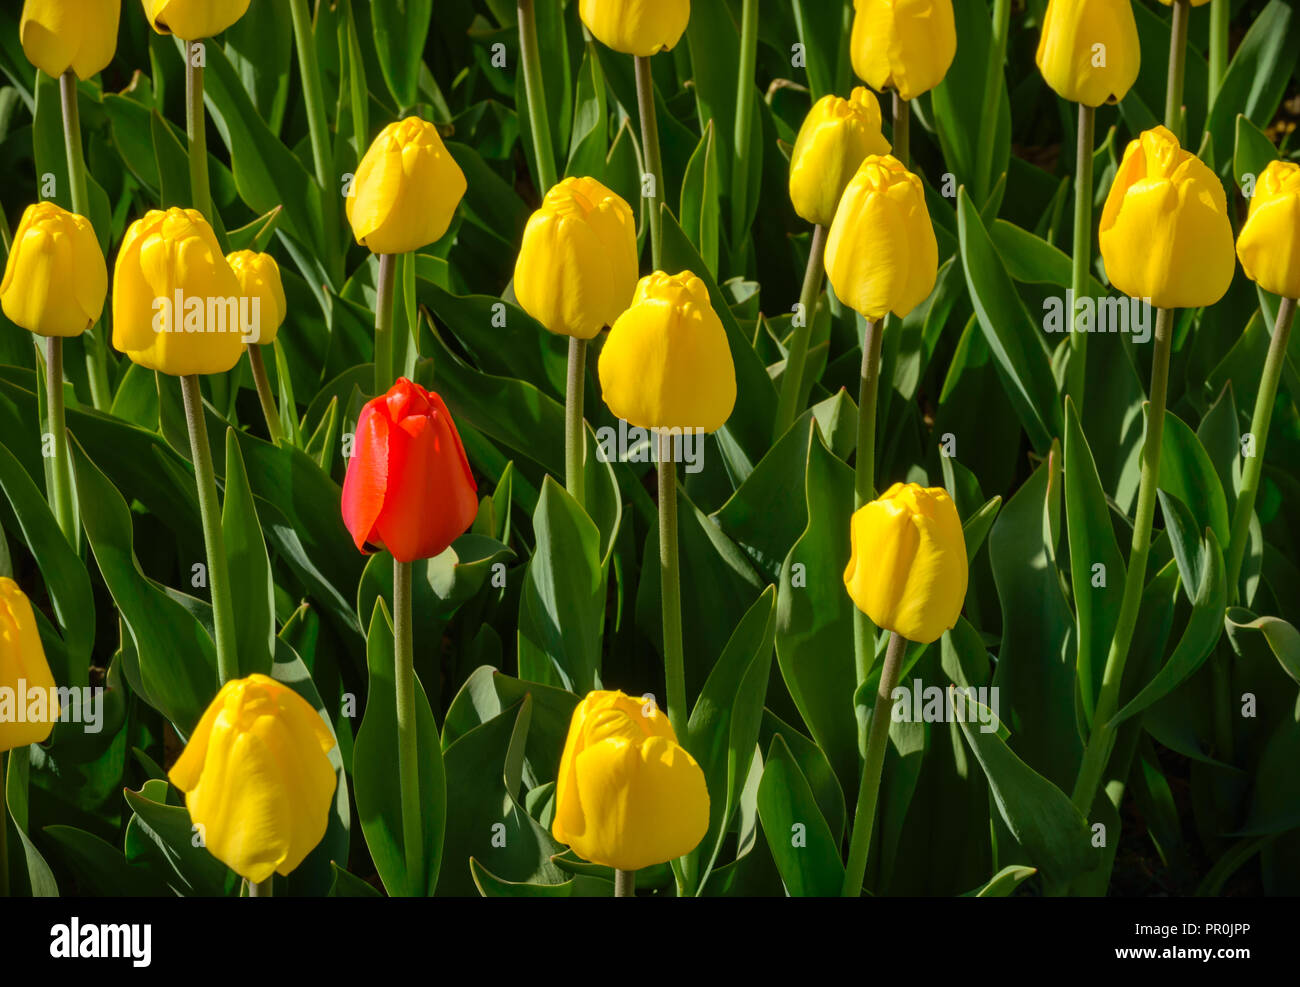 Unico red tulip che è stata accidentalmente piantato tra i tulipani gialli Foto Stock